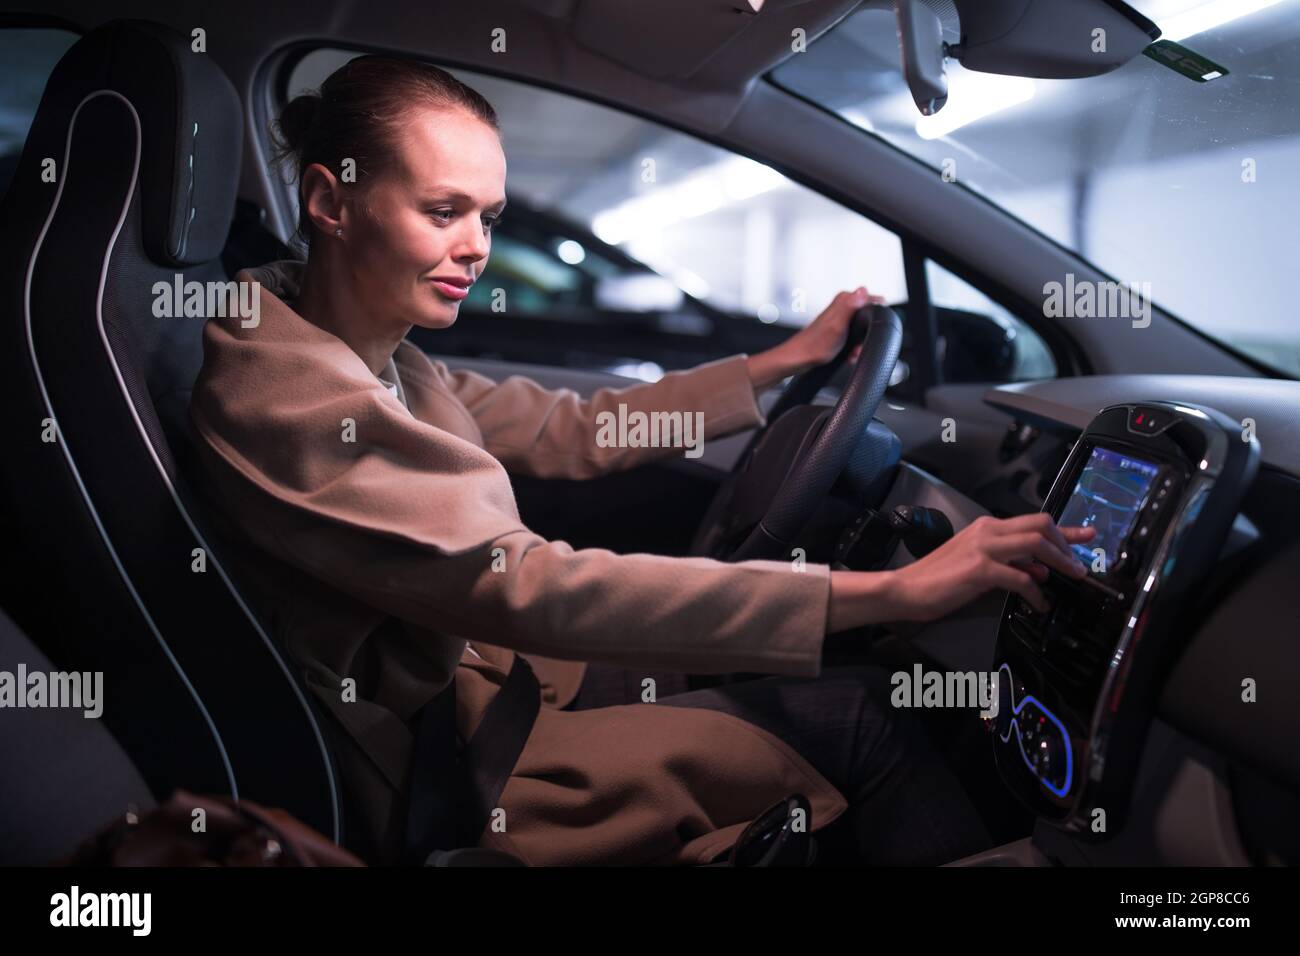 Estacionamiento subterráneo/garaje (DOF poco profundo; imagen en tonos de color) - mujer joven conduciendo su coche en el estacionamiento subterráneo Foto de stock